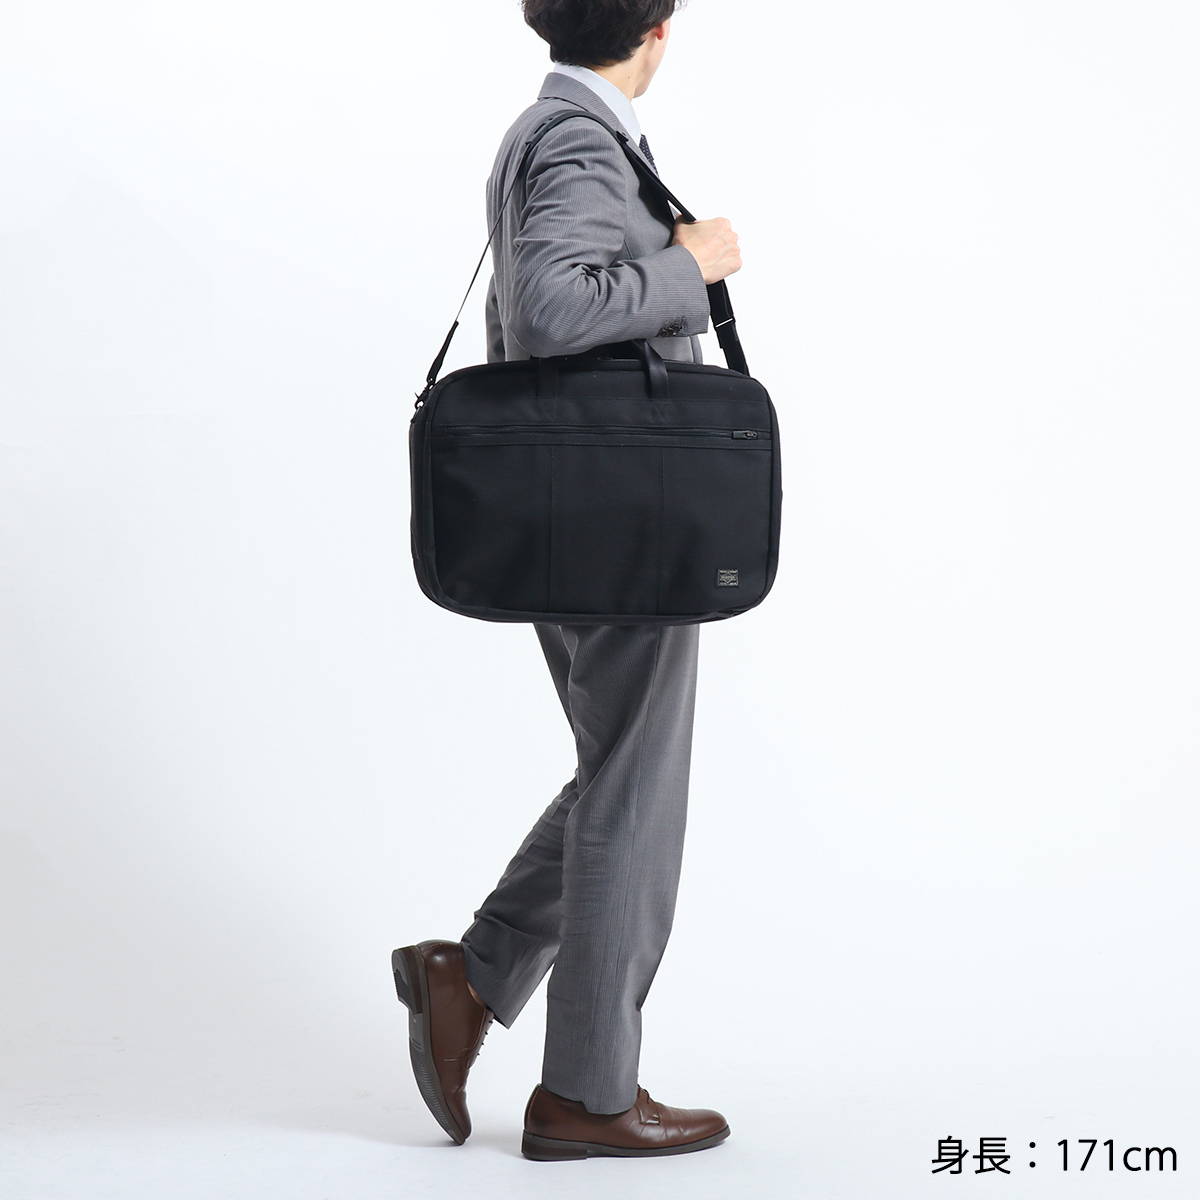 8,160円PORTER 3 way overnighter briefcase black